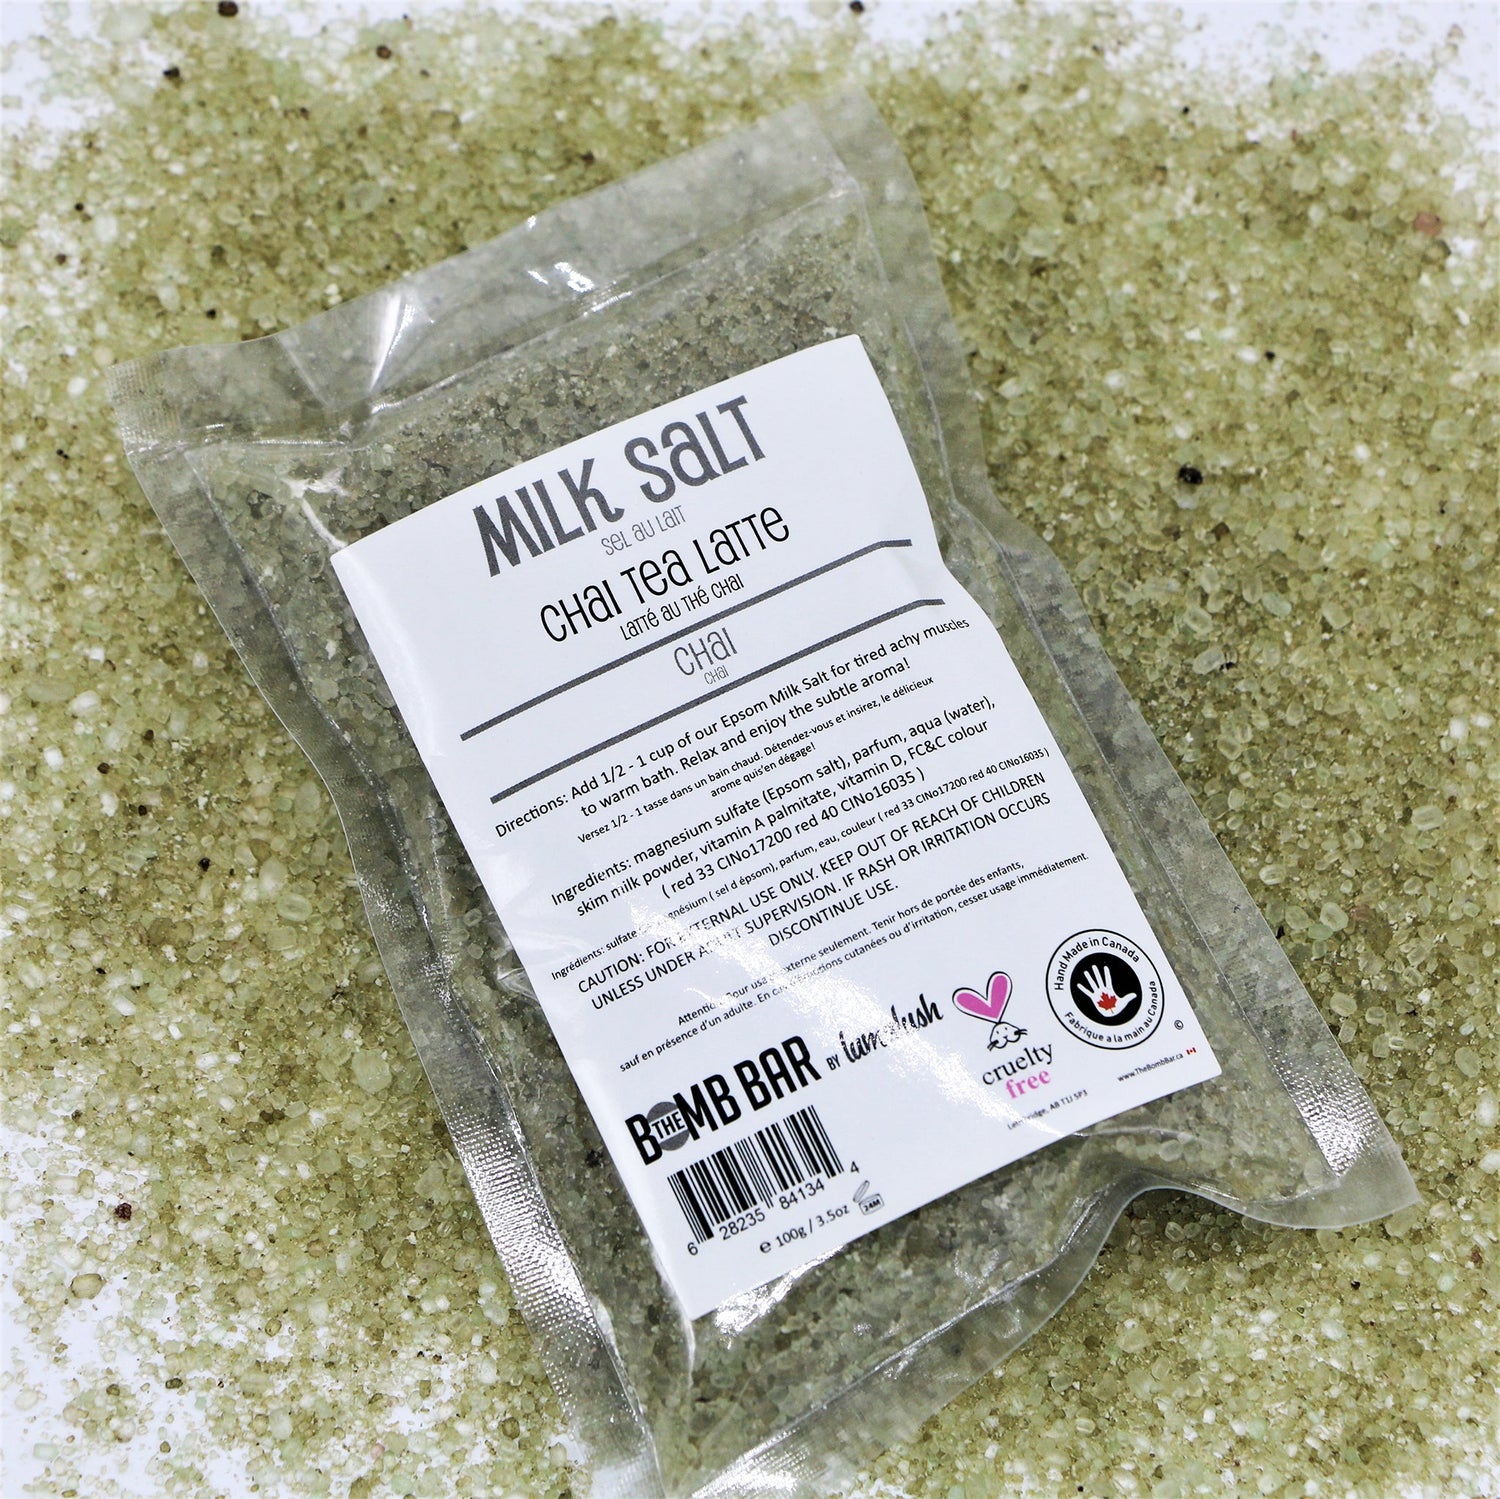 Bath Soak - Milk Salt